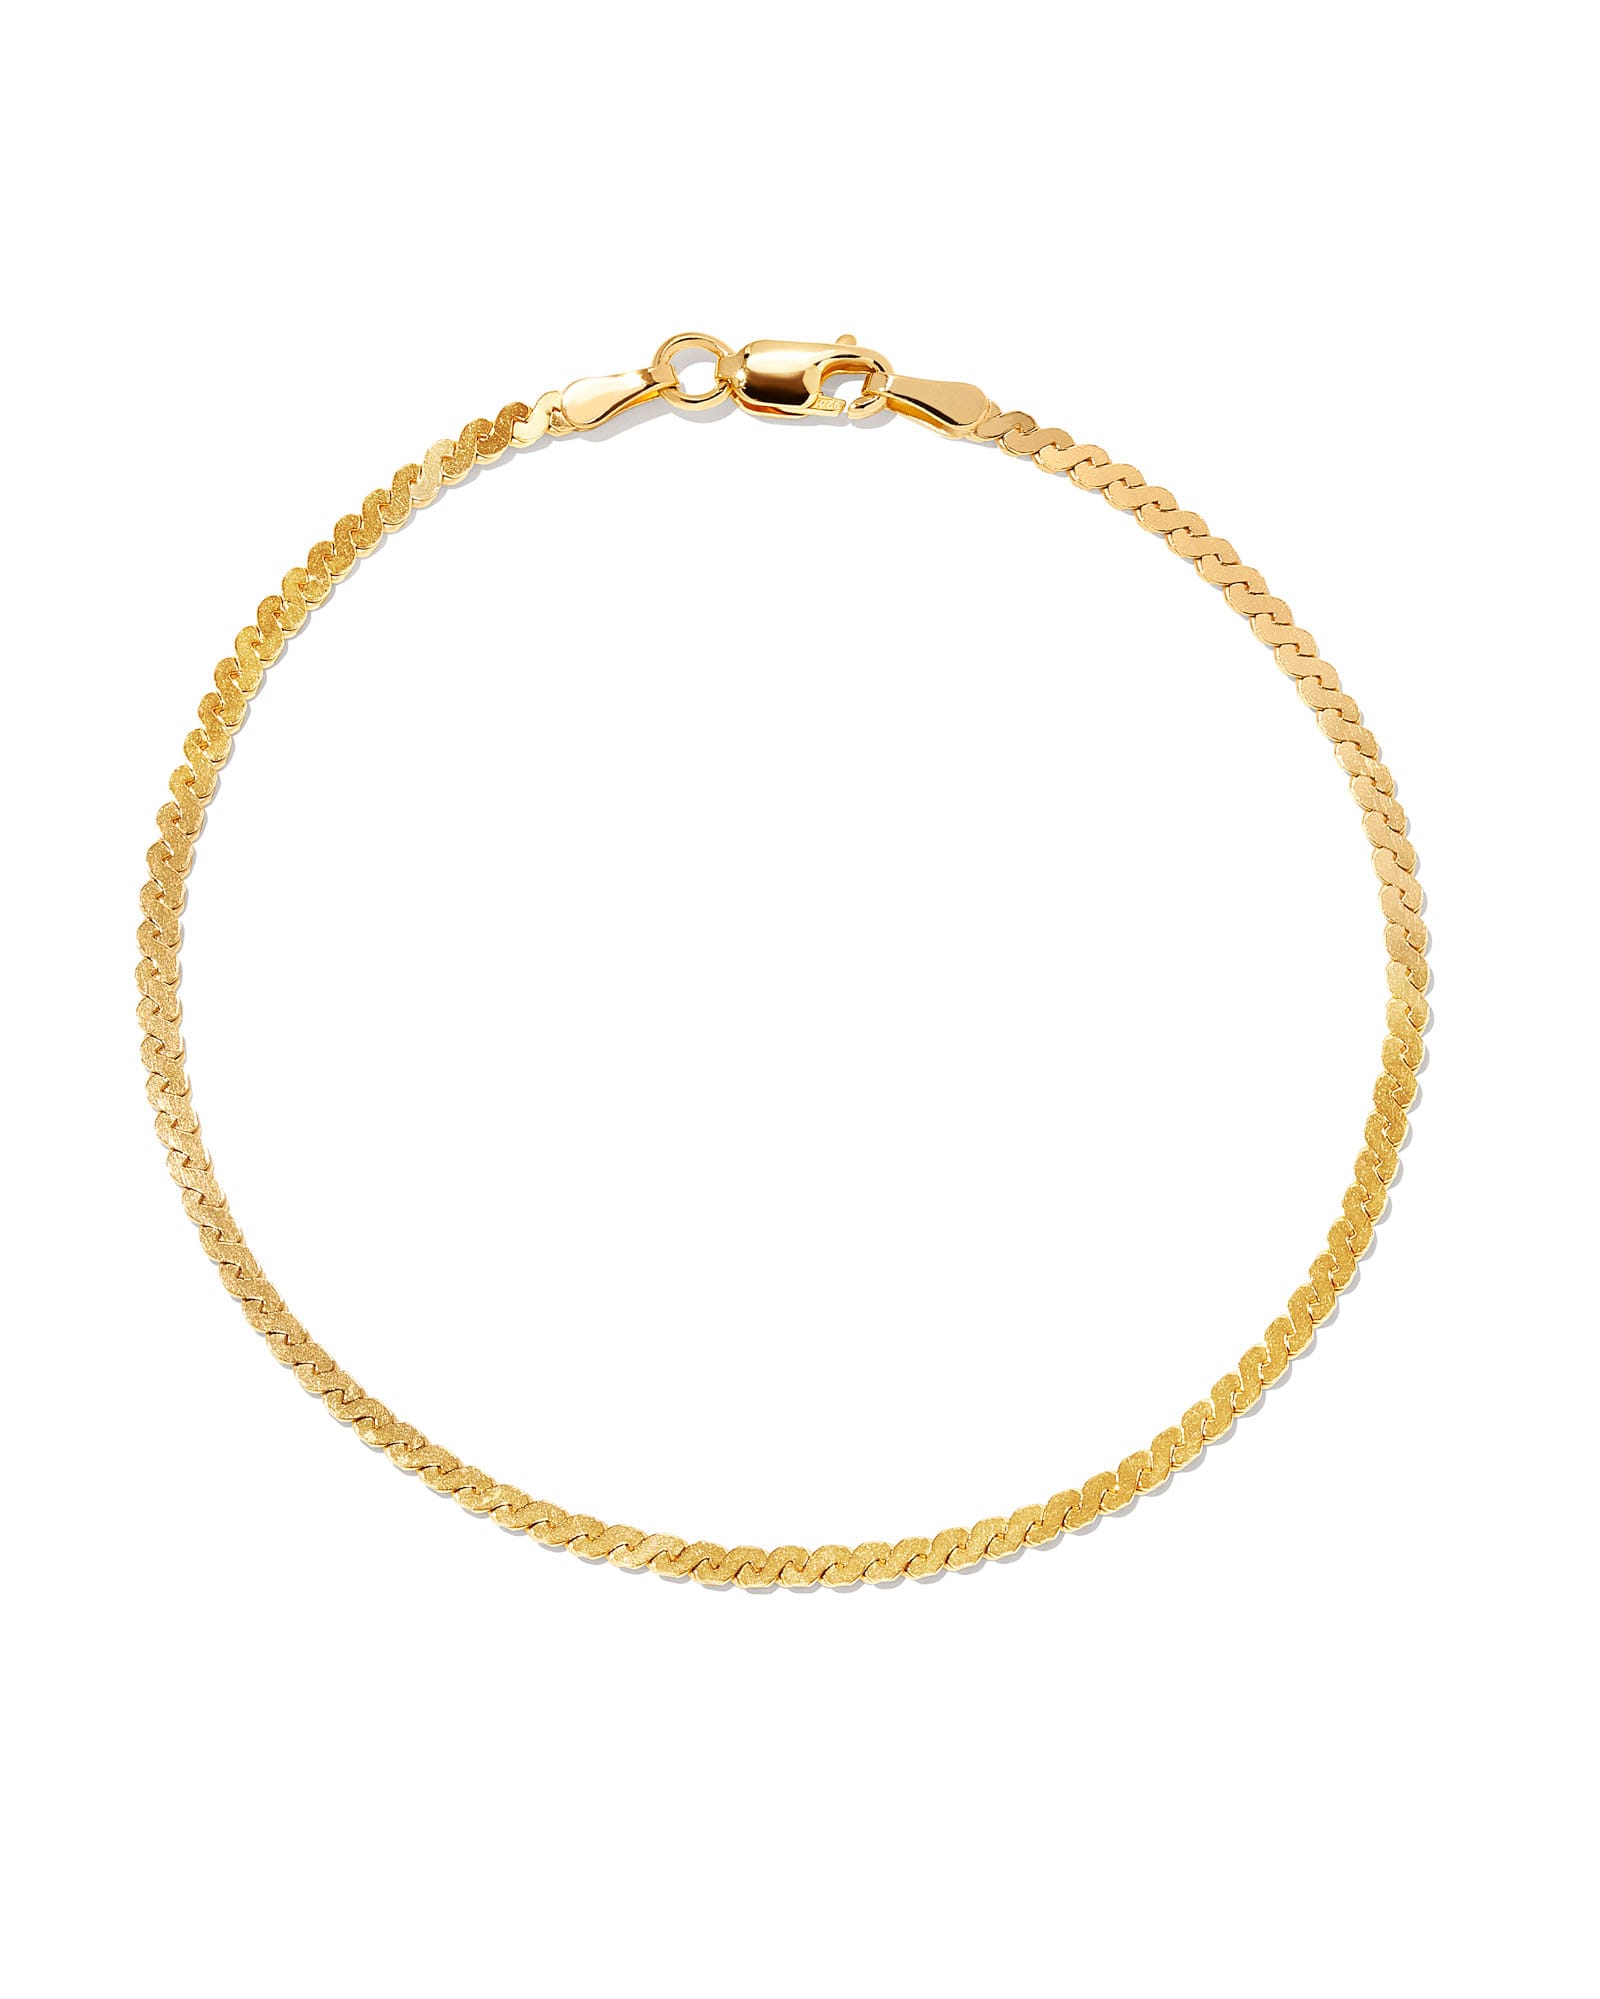 Kendra Scott Serpentine Chain Bracelet in 18k Gold Vermeil | Sterling Silver